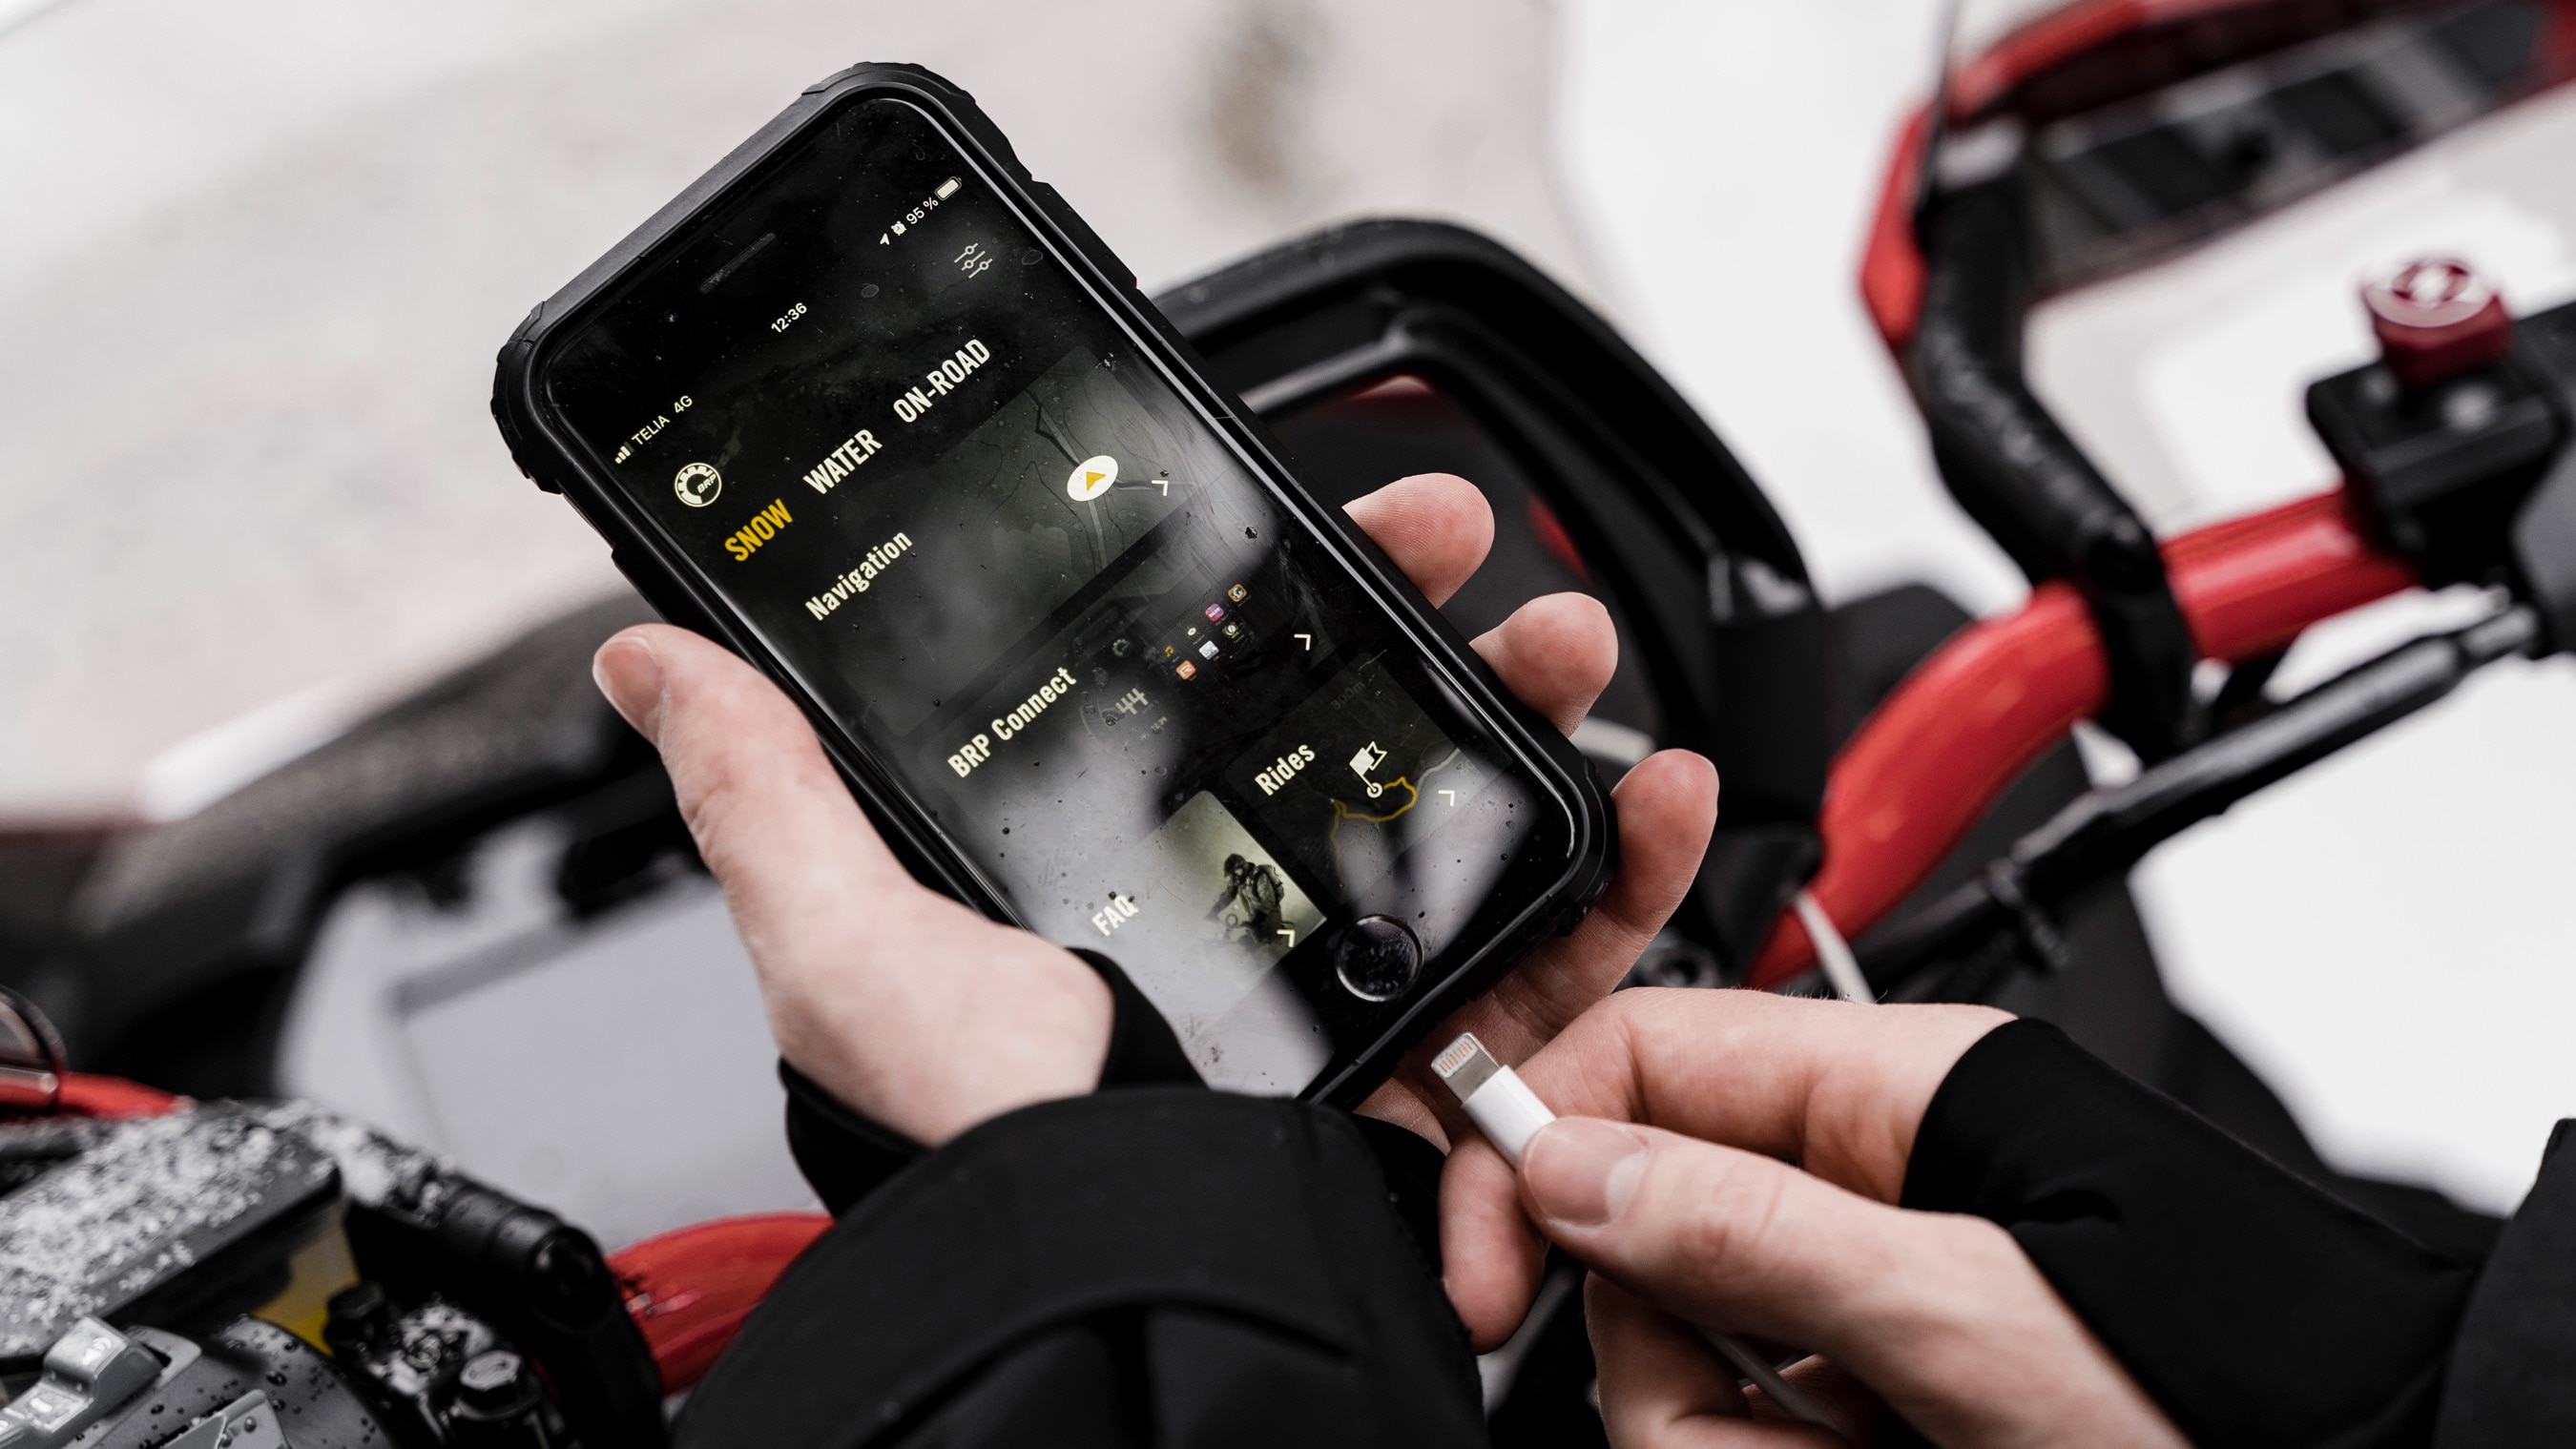 BRP GO! app on a phone near a Lynx snowmobile